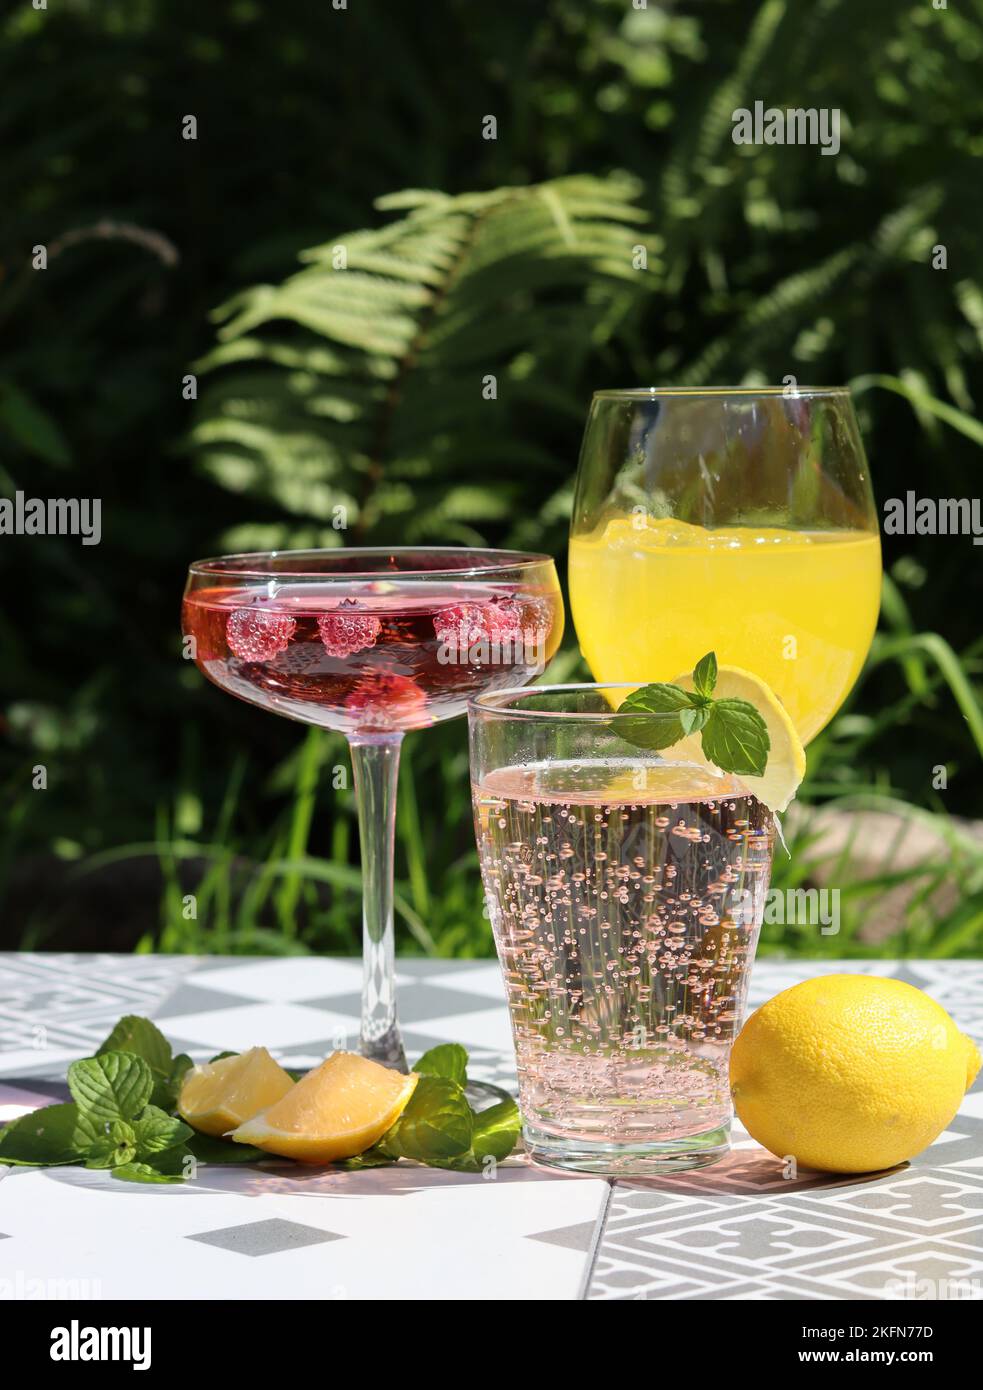 Cocktails rafraîchissants sur une table de jardin. Gros plan des verres avec différentes boissons. Faites la fête dans un jardin. Banque D'Images